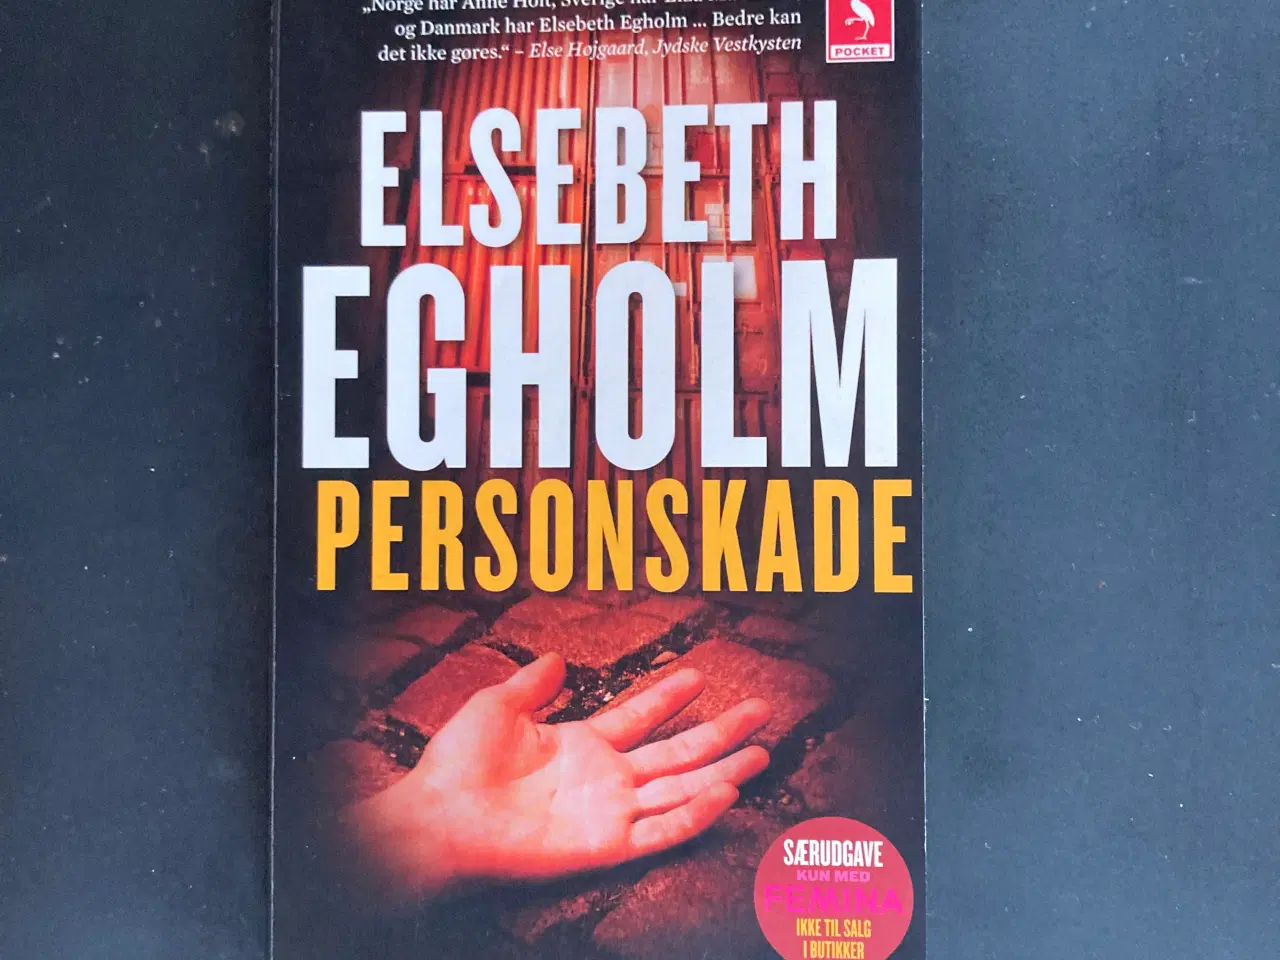 Billede 6 - Bøger af Elsebeth Egholm - 5 stk